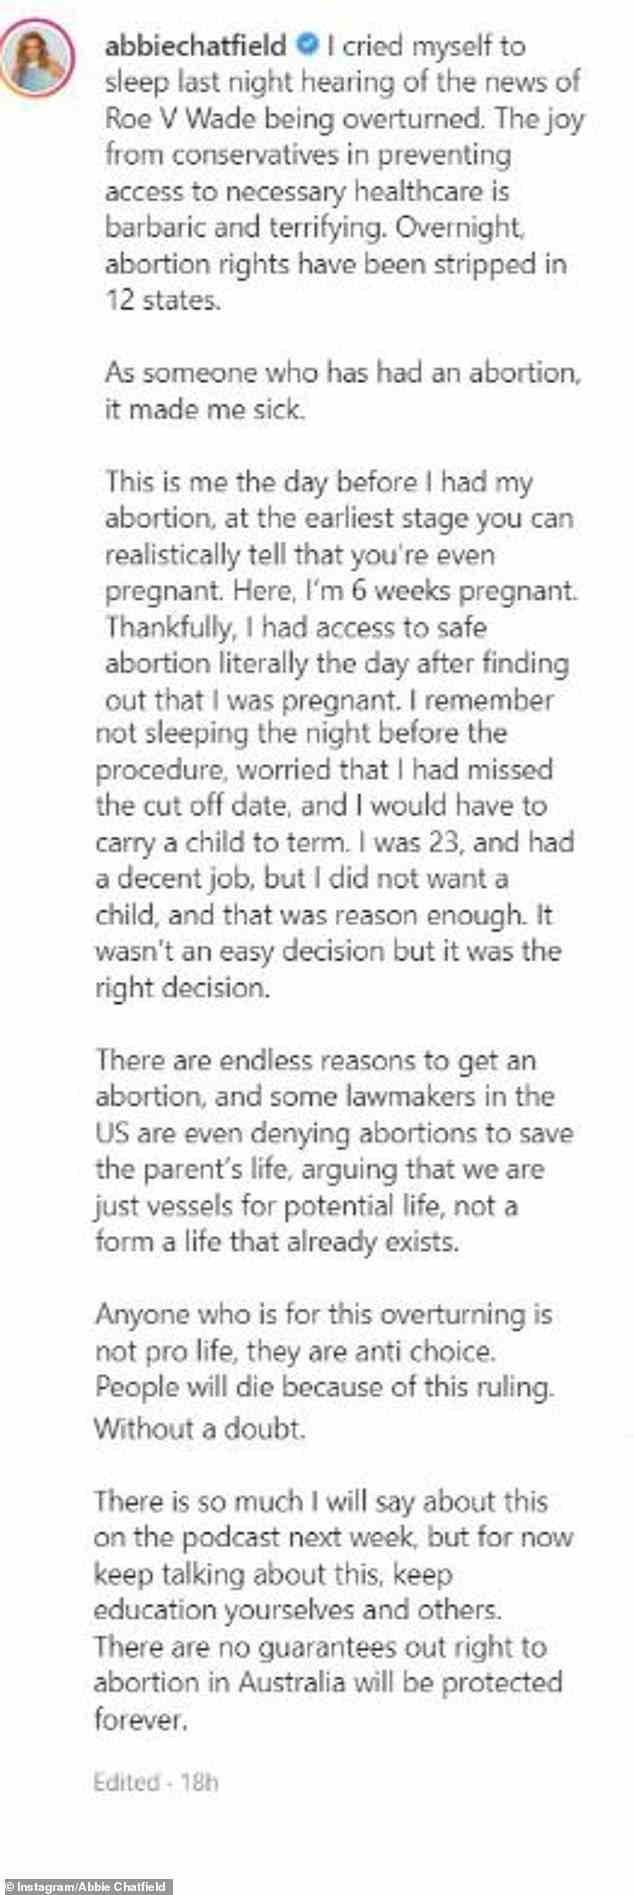 „Zum Glück hatte ich buchstäblich am Tag, nachdem ich erfahren hatte, dass ich schwanger war, Zugang zu einer sicheren Abtreibung.  Ich erinnere mich, dass ich in der Nacht vor dem Eingriff nicht geschlafen habe, weil ich befürchtete, den Stichtag verpasst zu haben und ein Kind austragen zu müssen“, schrieb sie